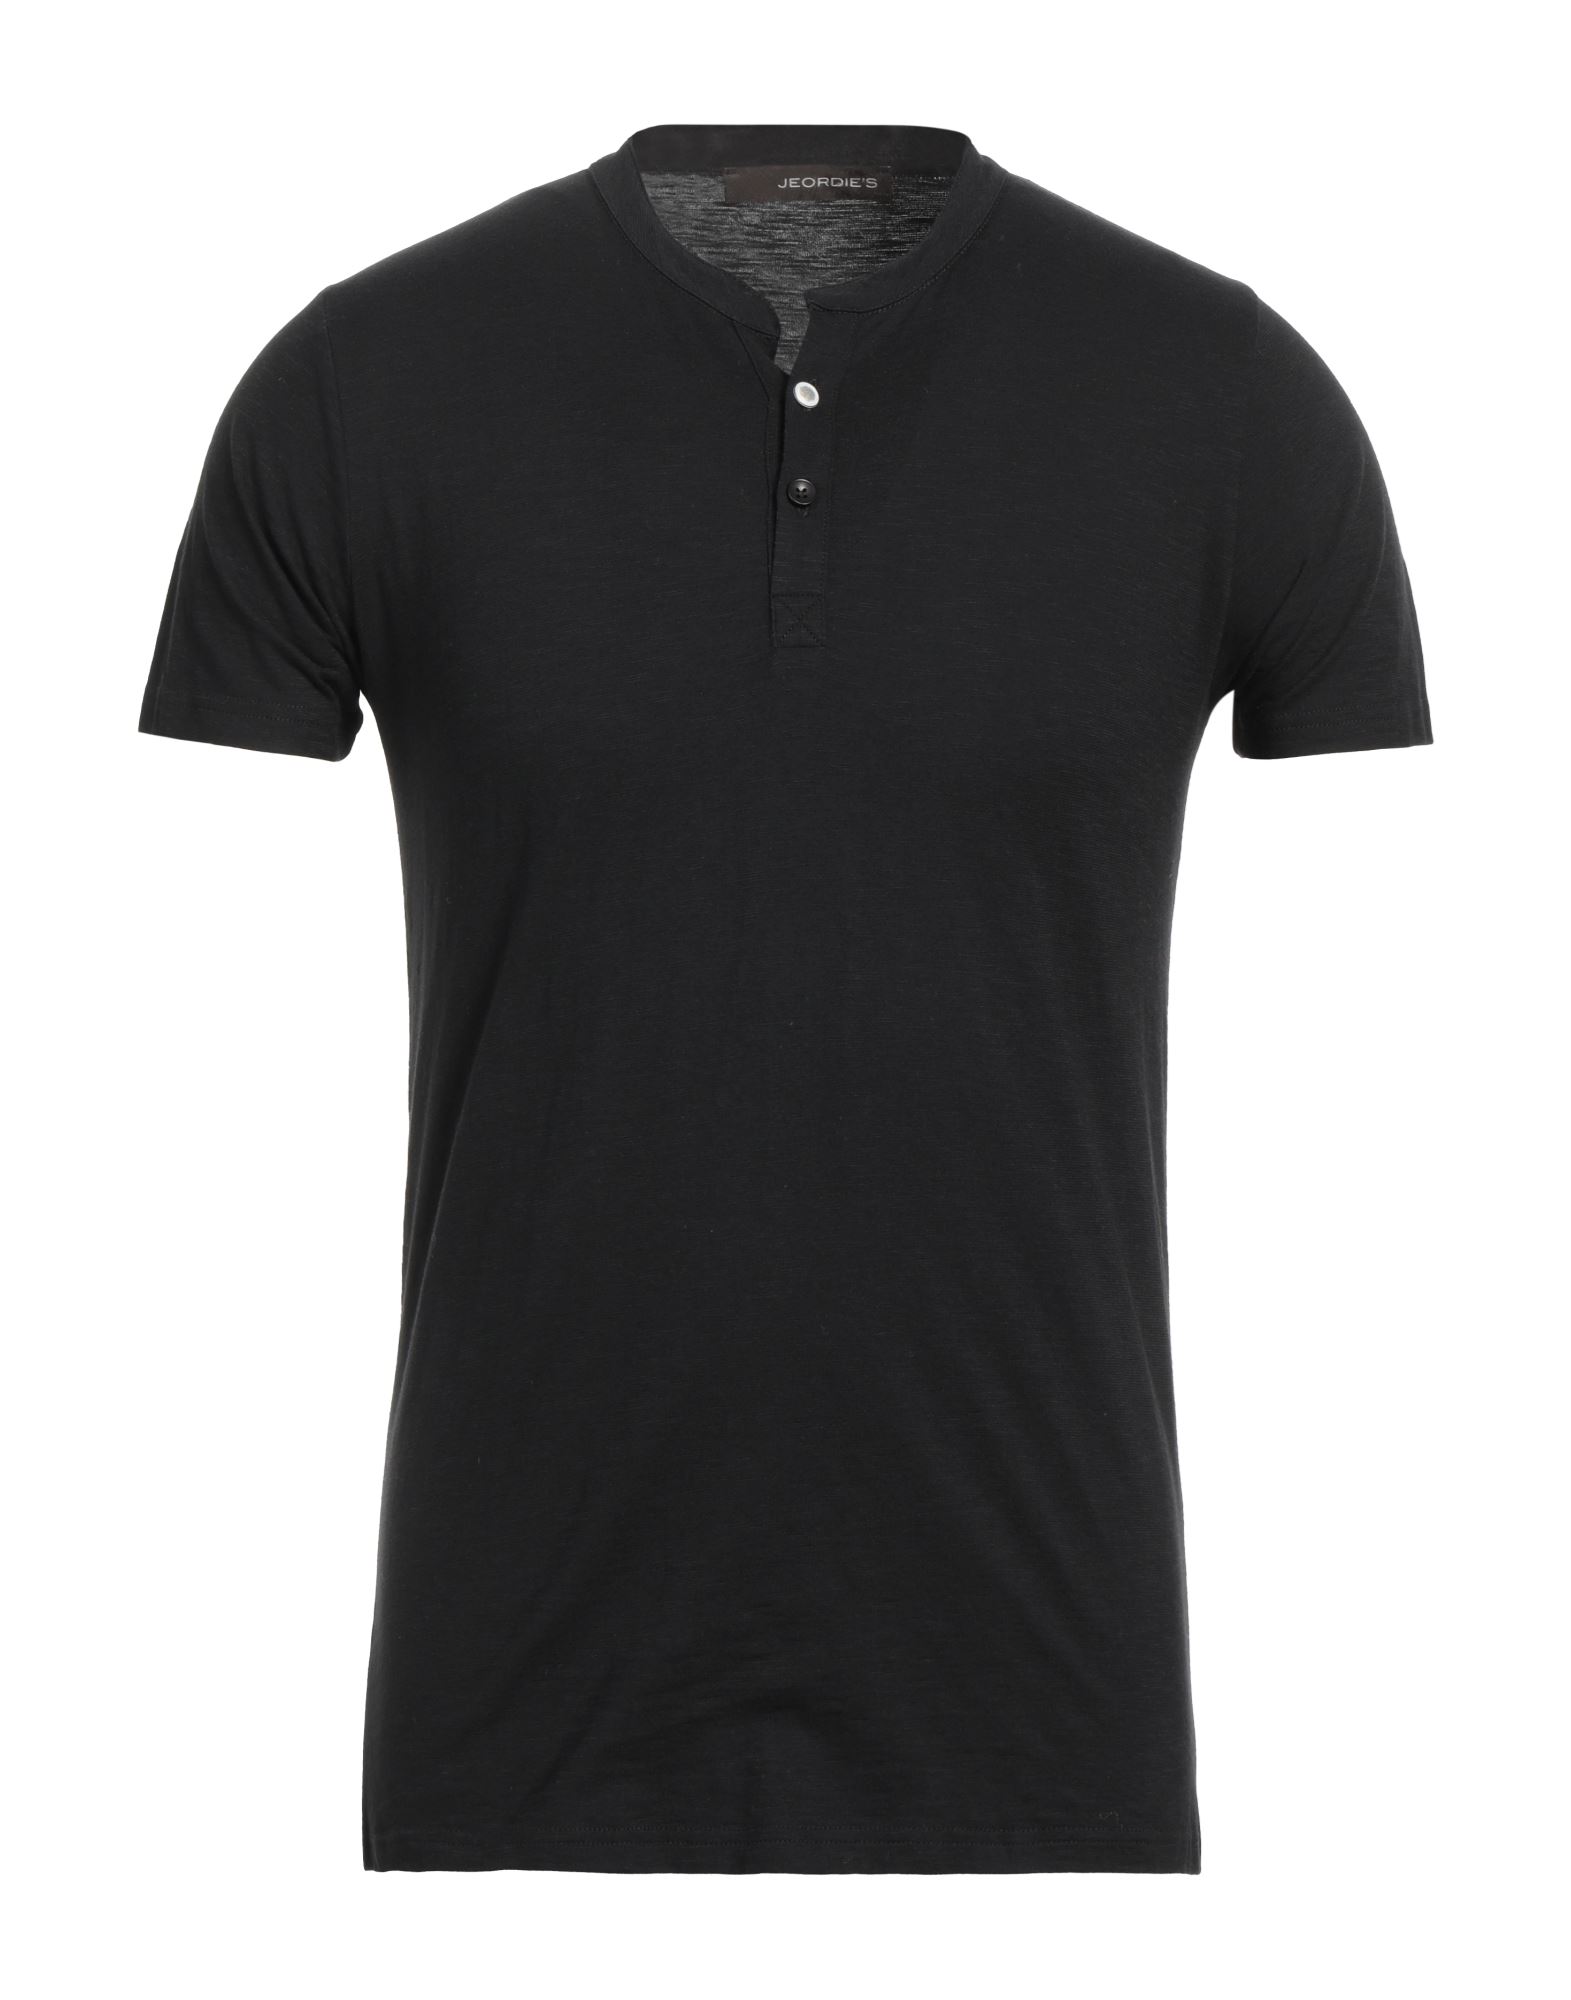 Jeordie's Man T-shirt Black Size Xl Cotton